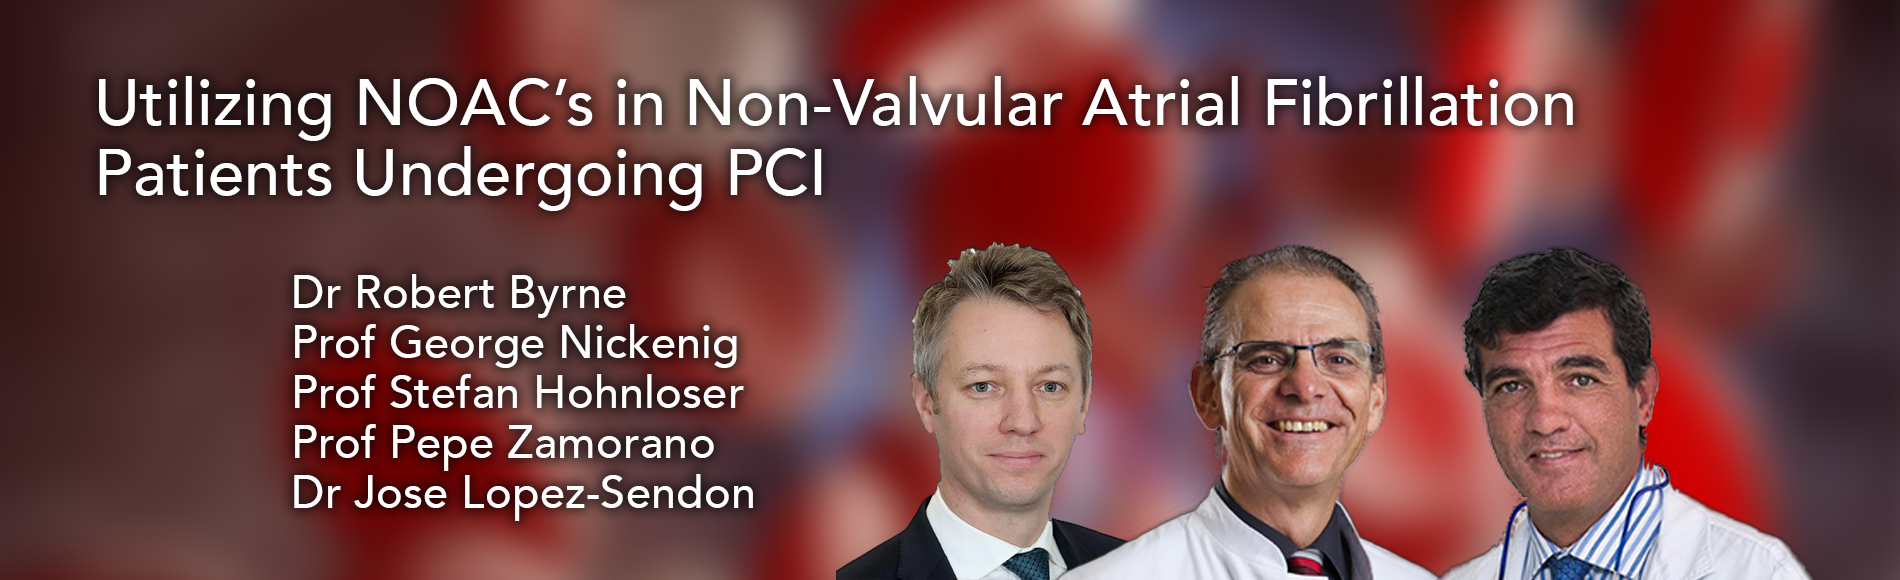 Utilizing NOAC's in Non-valvular Atrial Fibrillation Patients Undergoing PCI